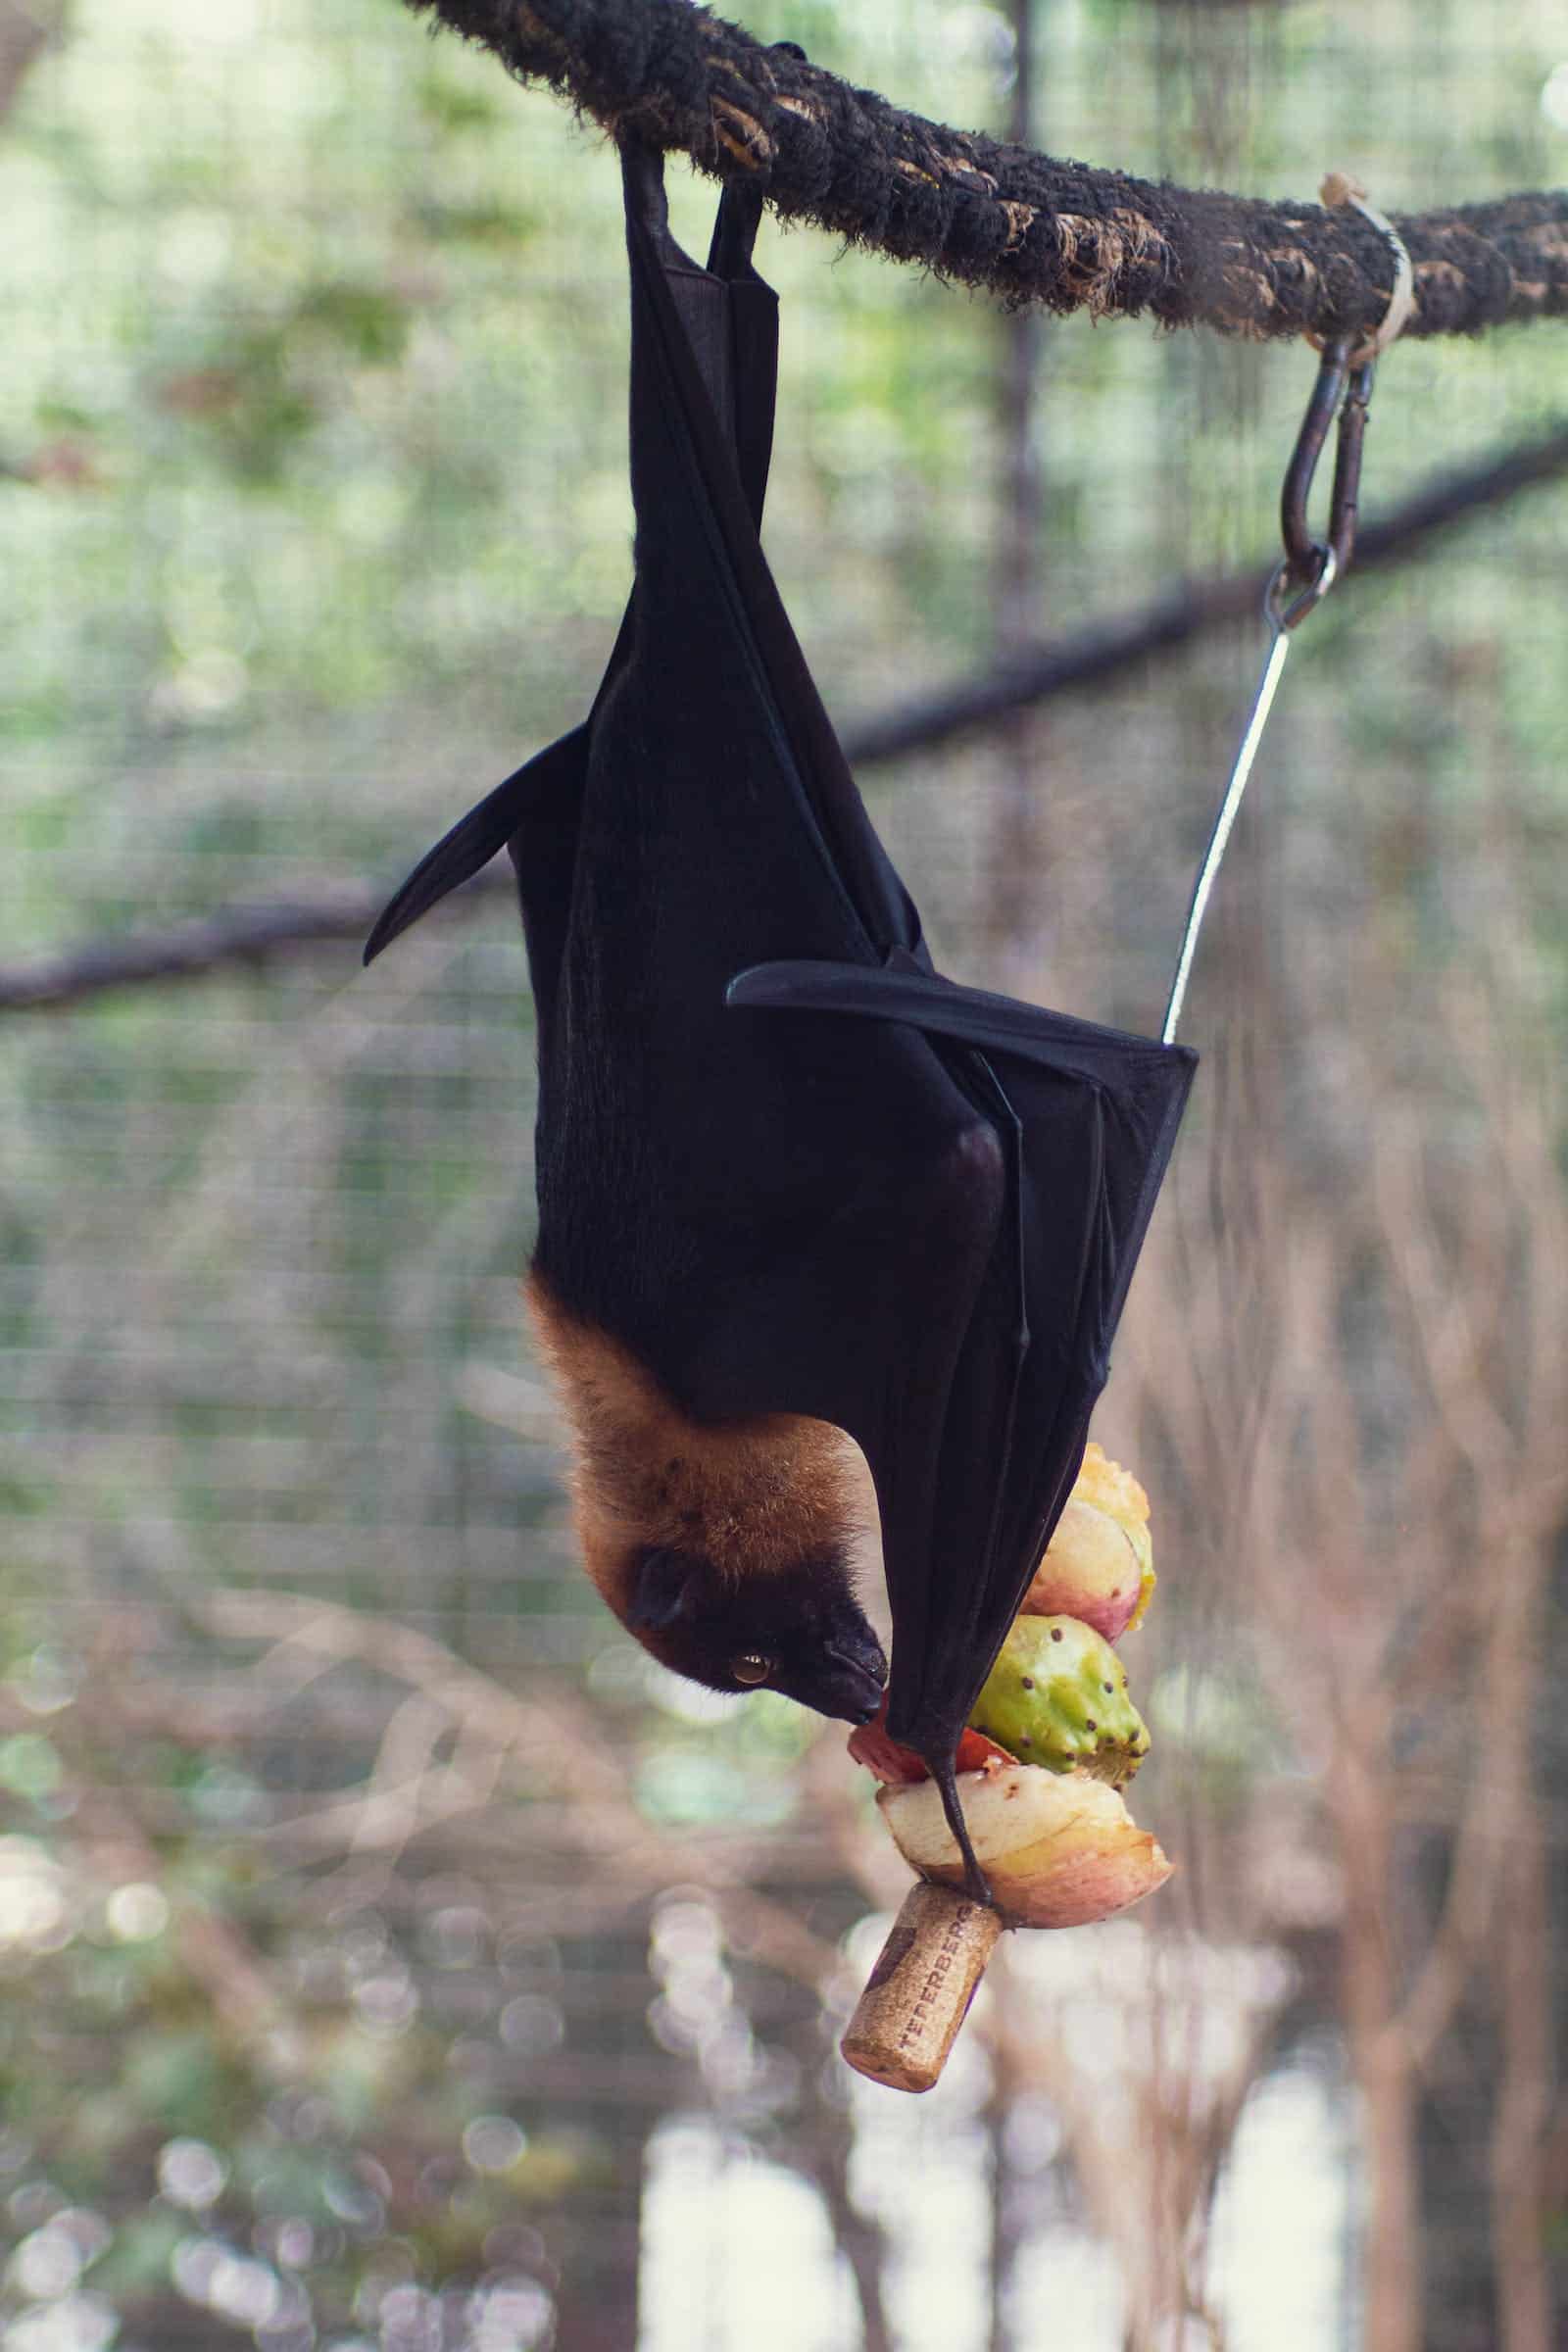 Bat hanging upside down eating fruit